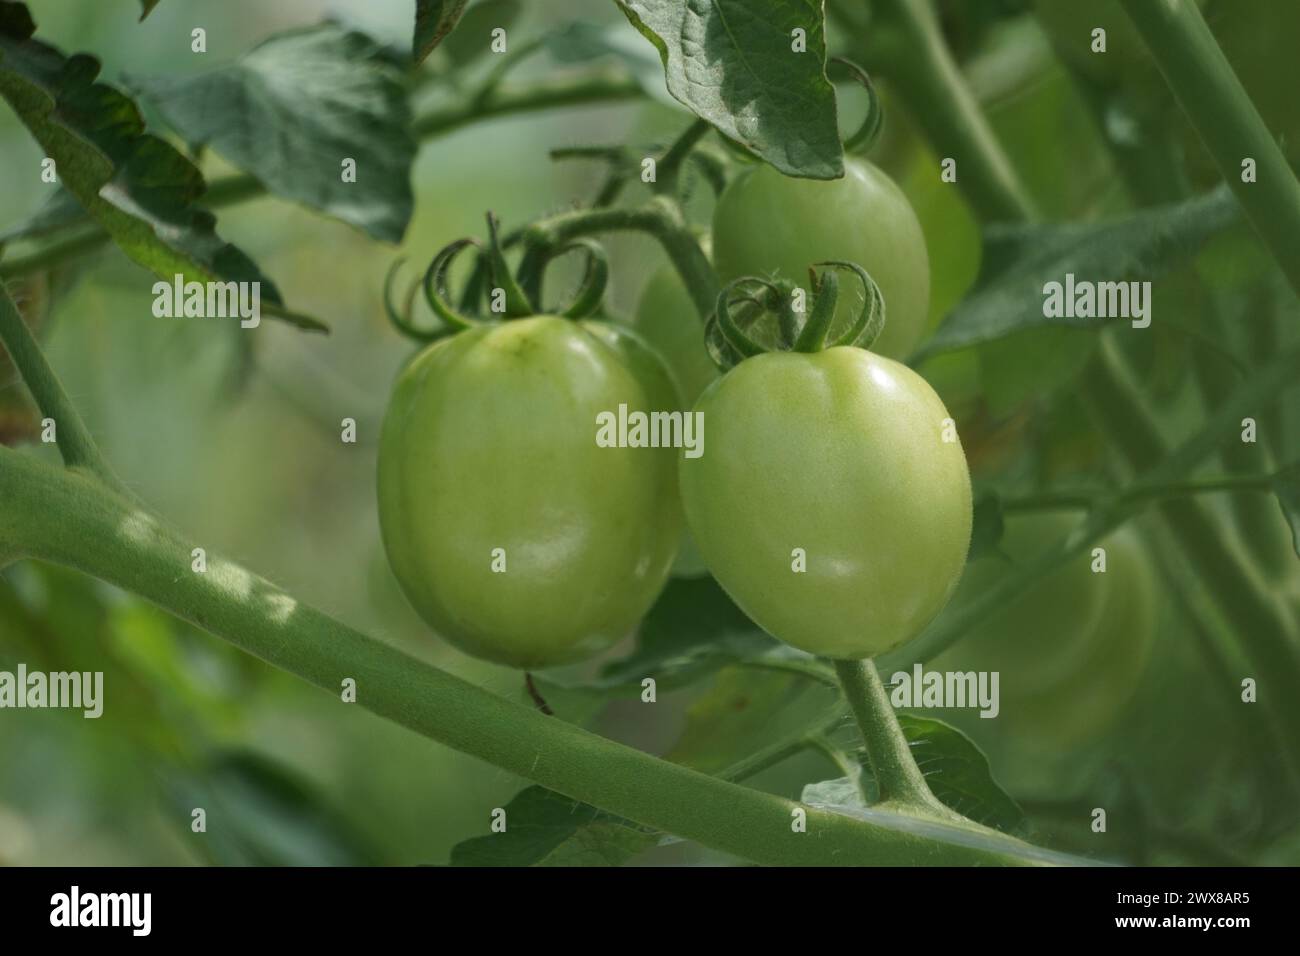 Tomate verte (aussi appelée Solanum lycopersicum, Lycopersicon lycopersicum, Lycopersicon esculentum) sur l'arbre Banque D'Images